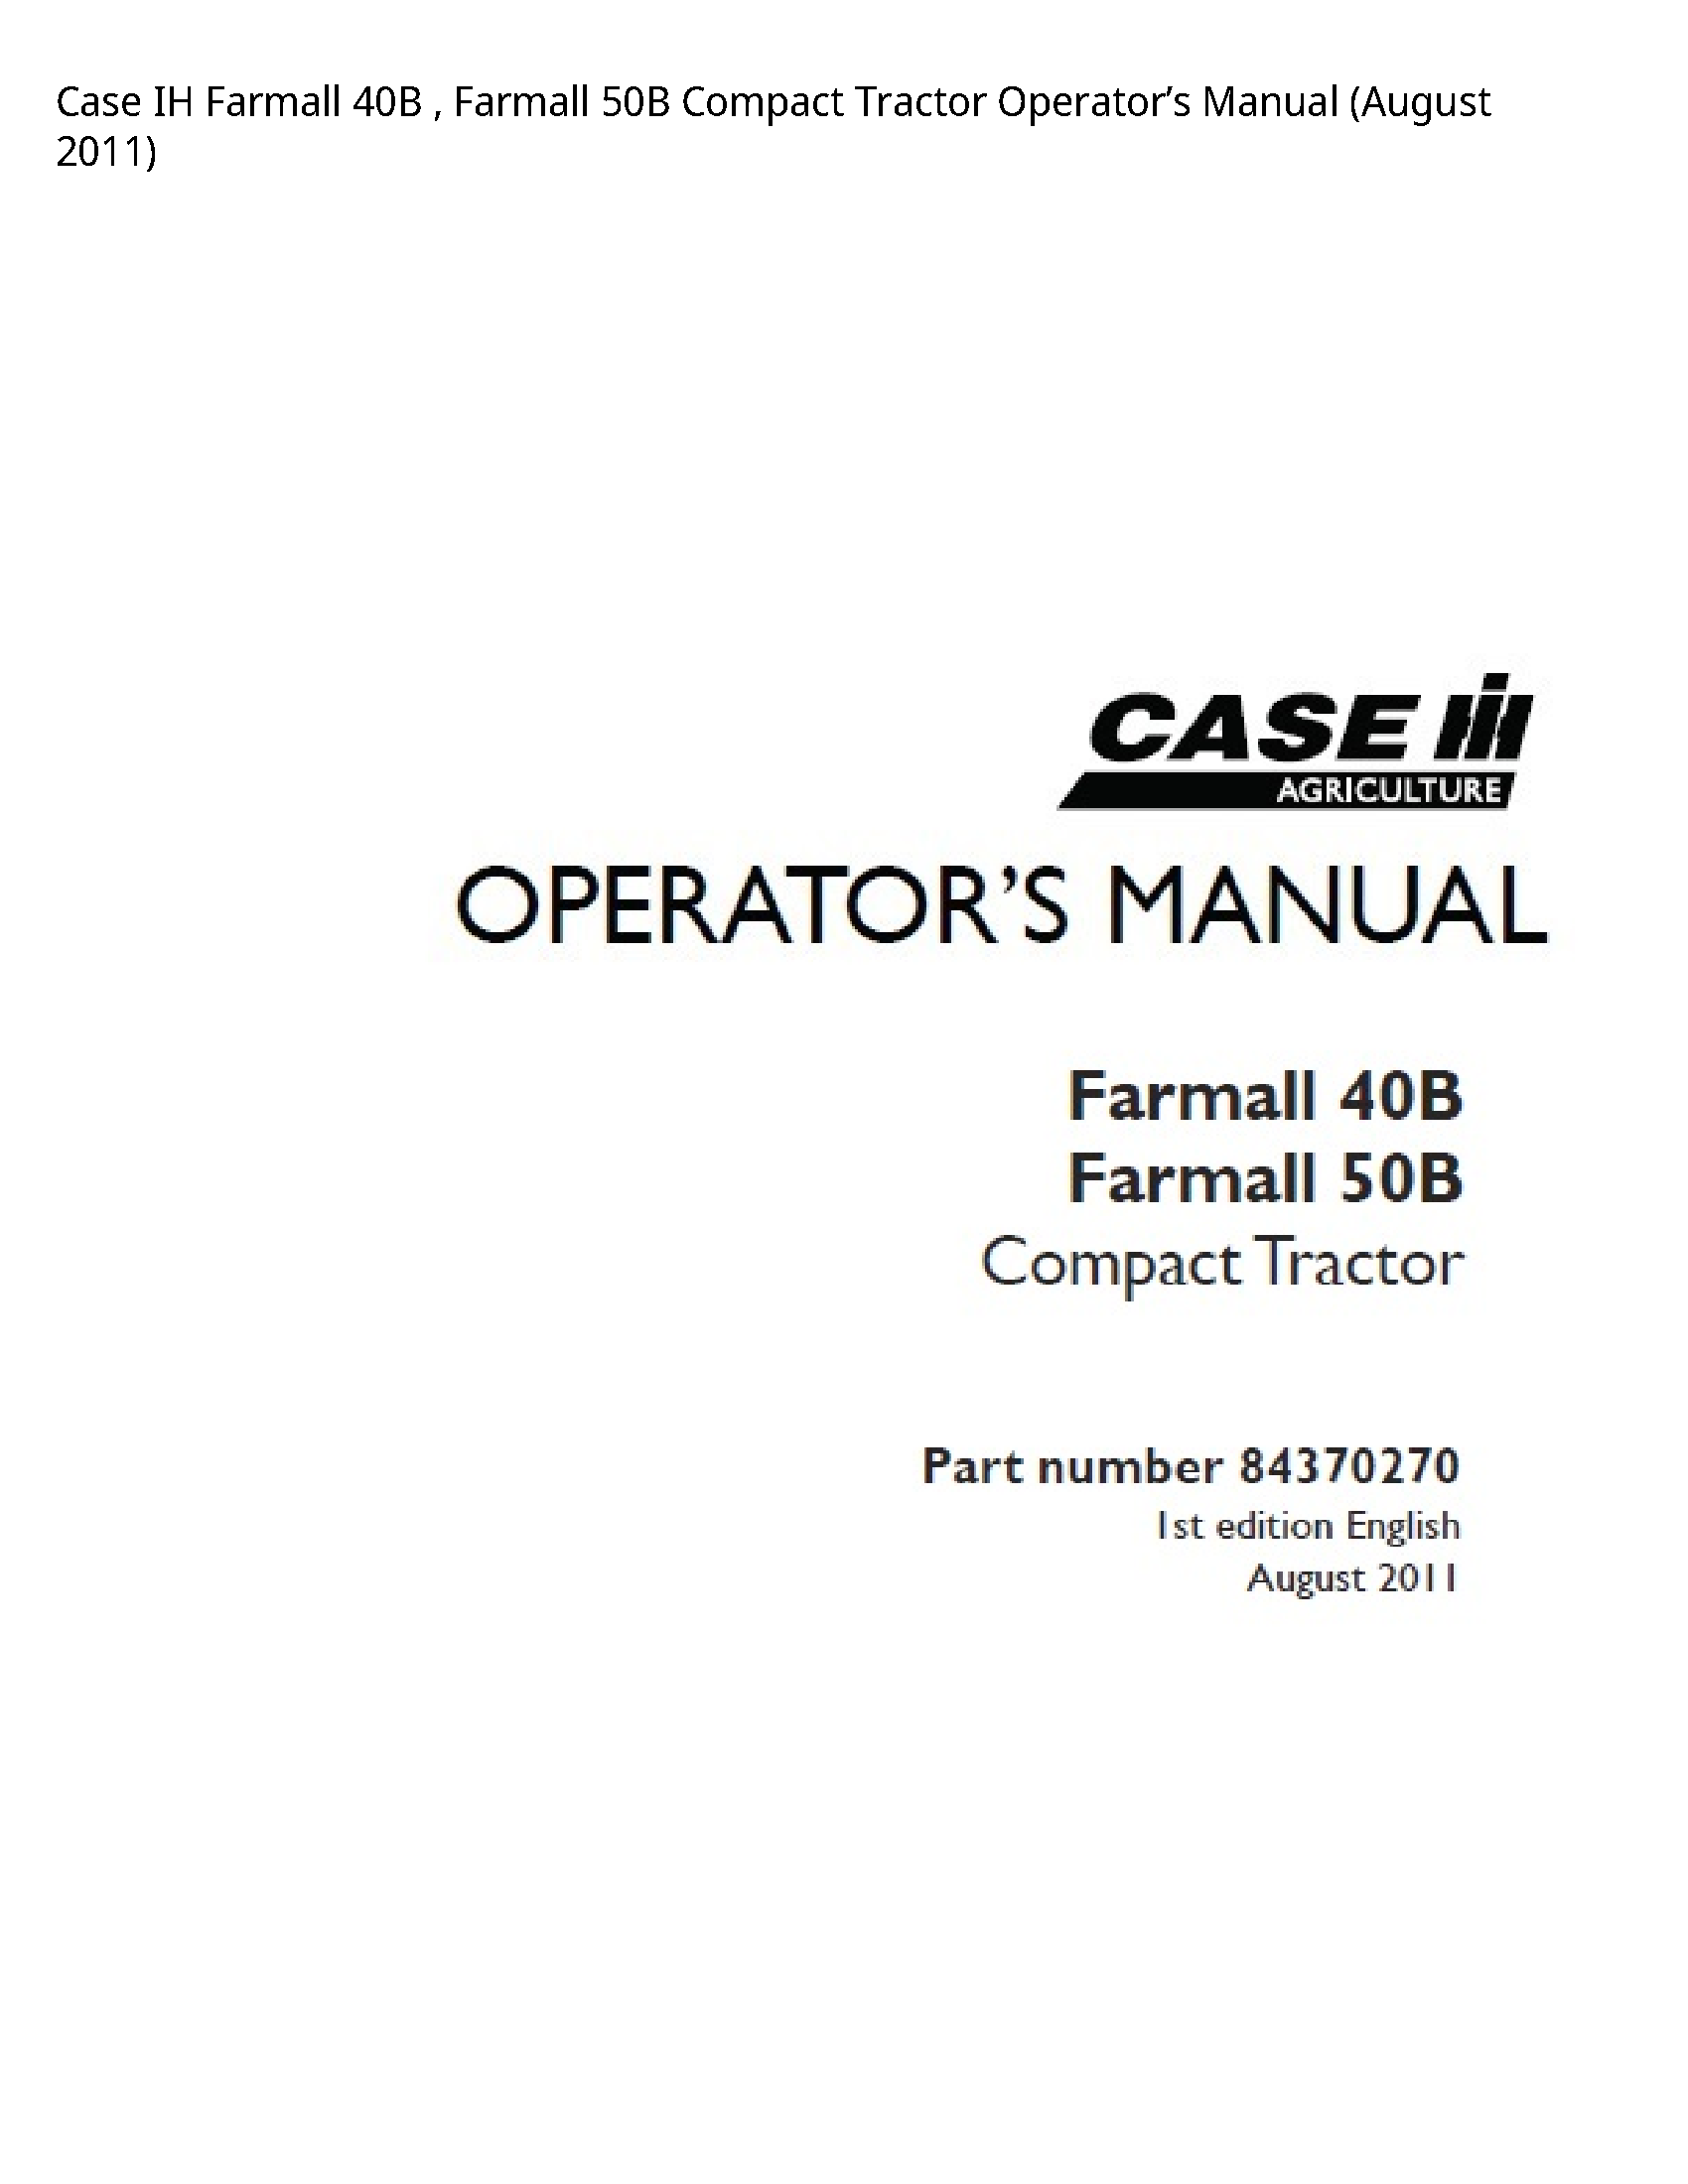 Case/Case IH 40B IH Farmall Farmall Compact Tractor Operator’s manual